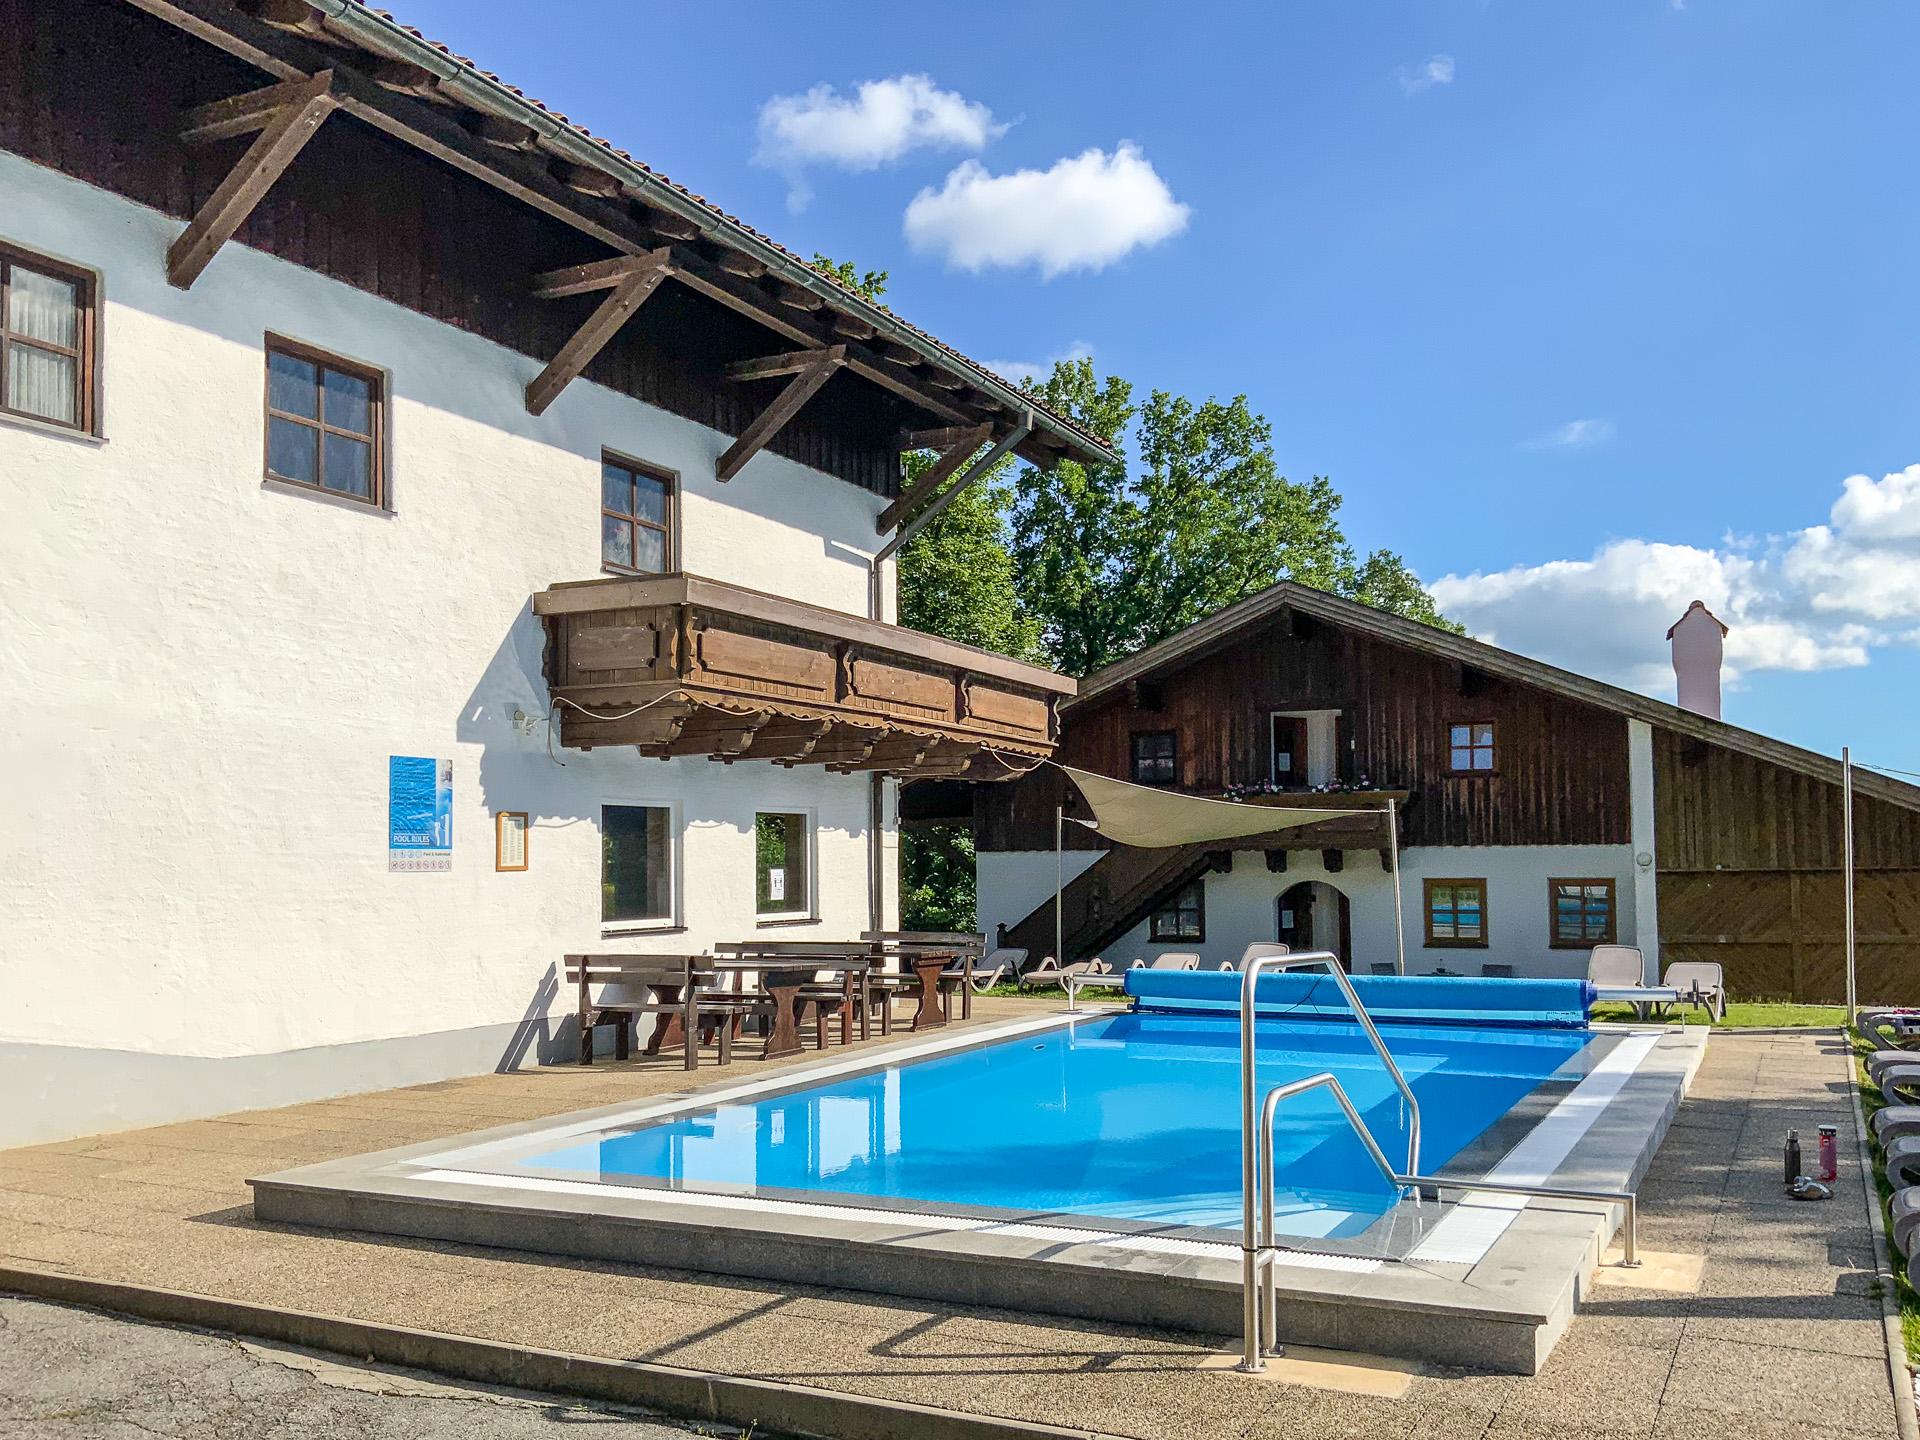 Apartmán v Bavorském lese s letním bazénem